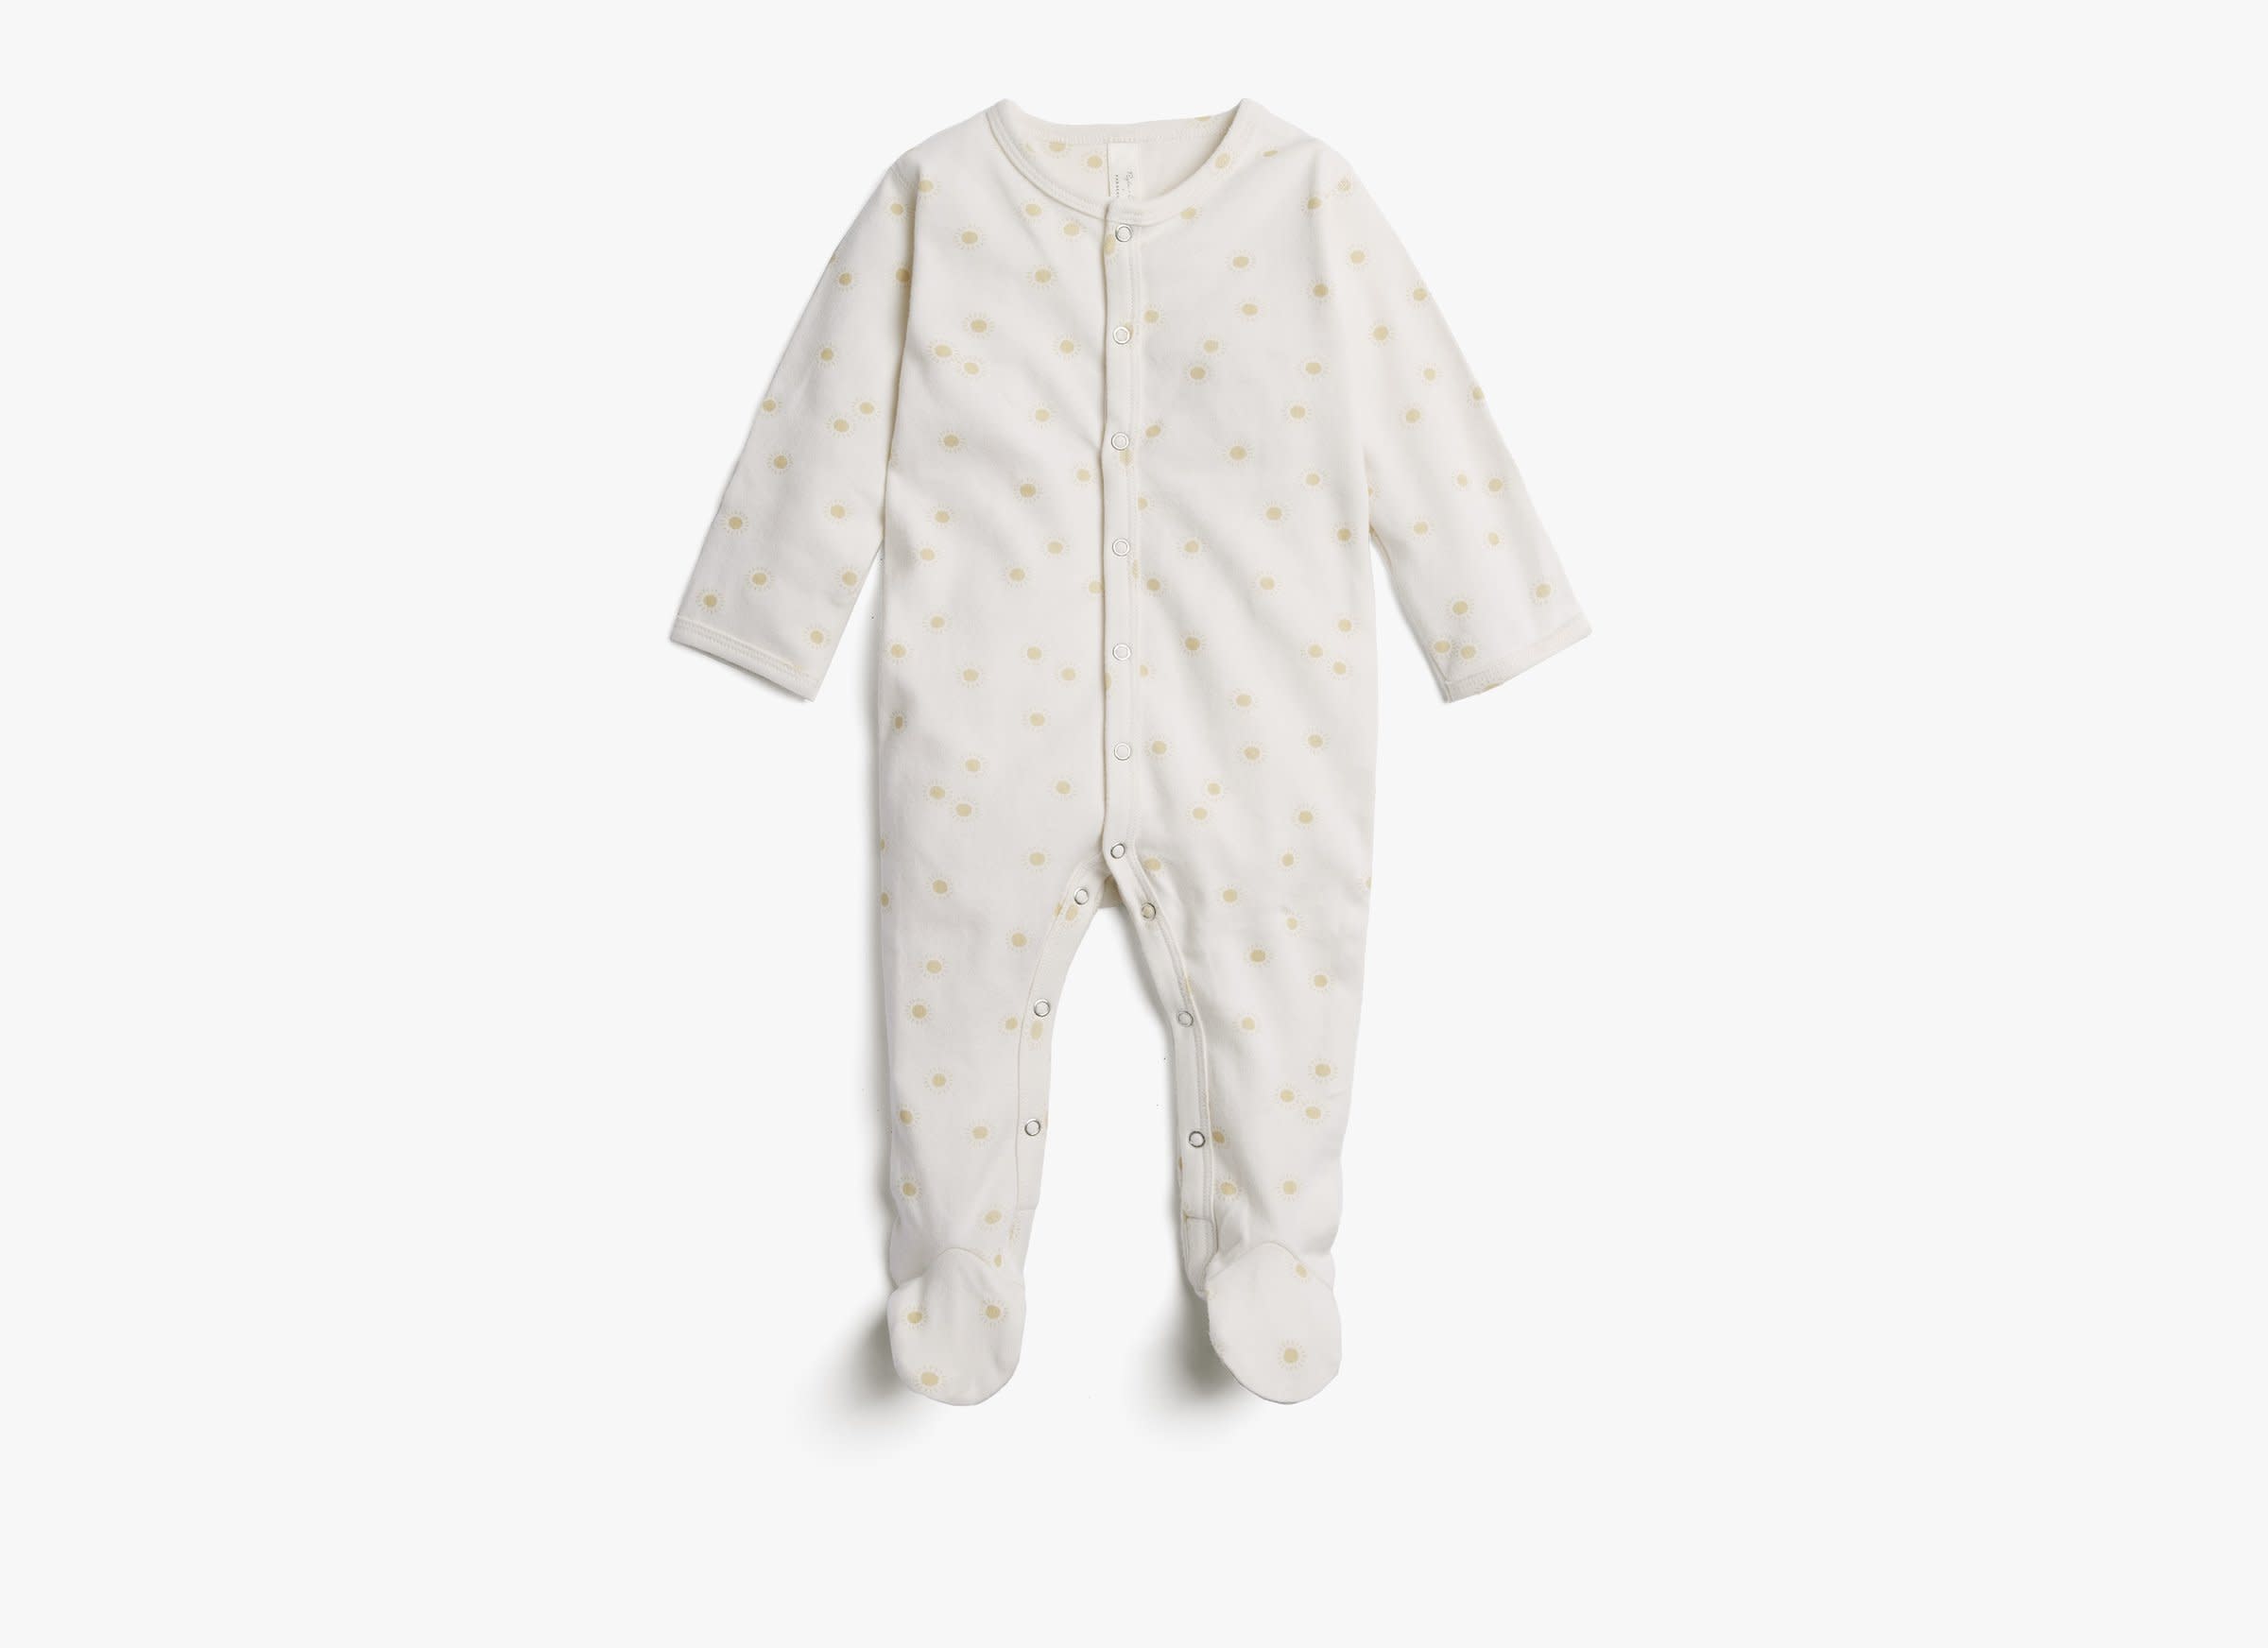 White Sunburst Footie Pajama Product Image